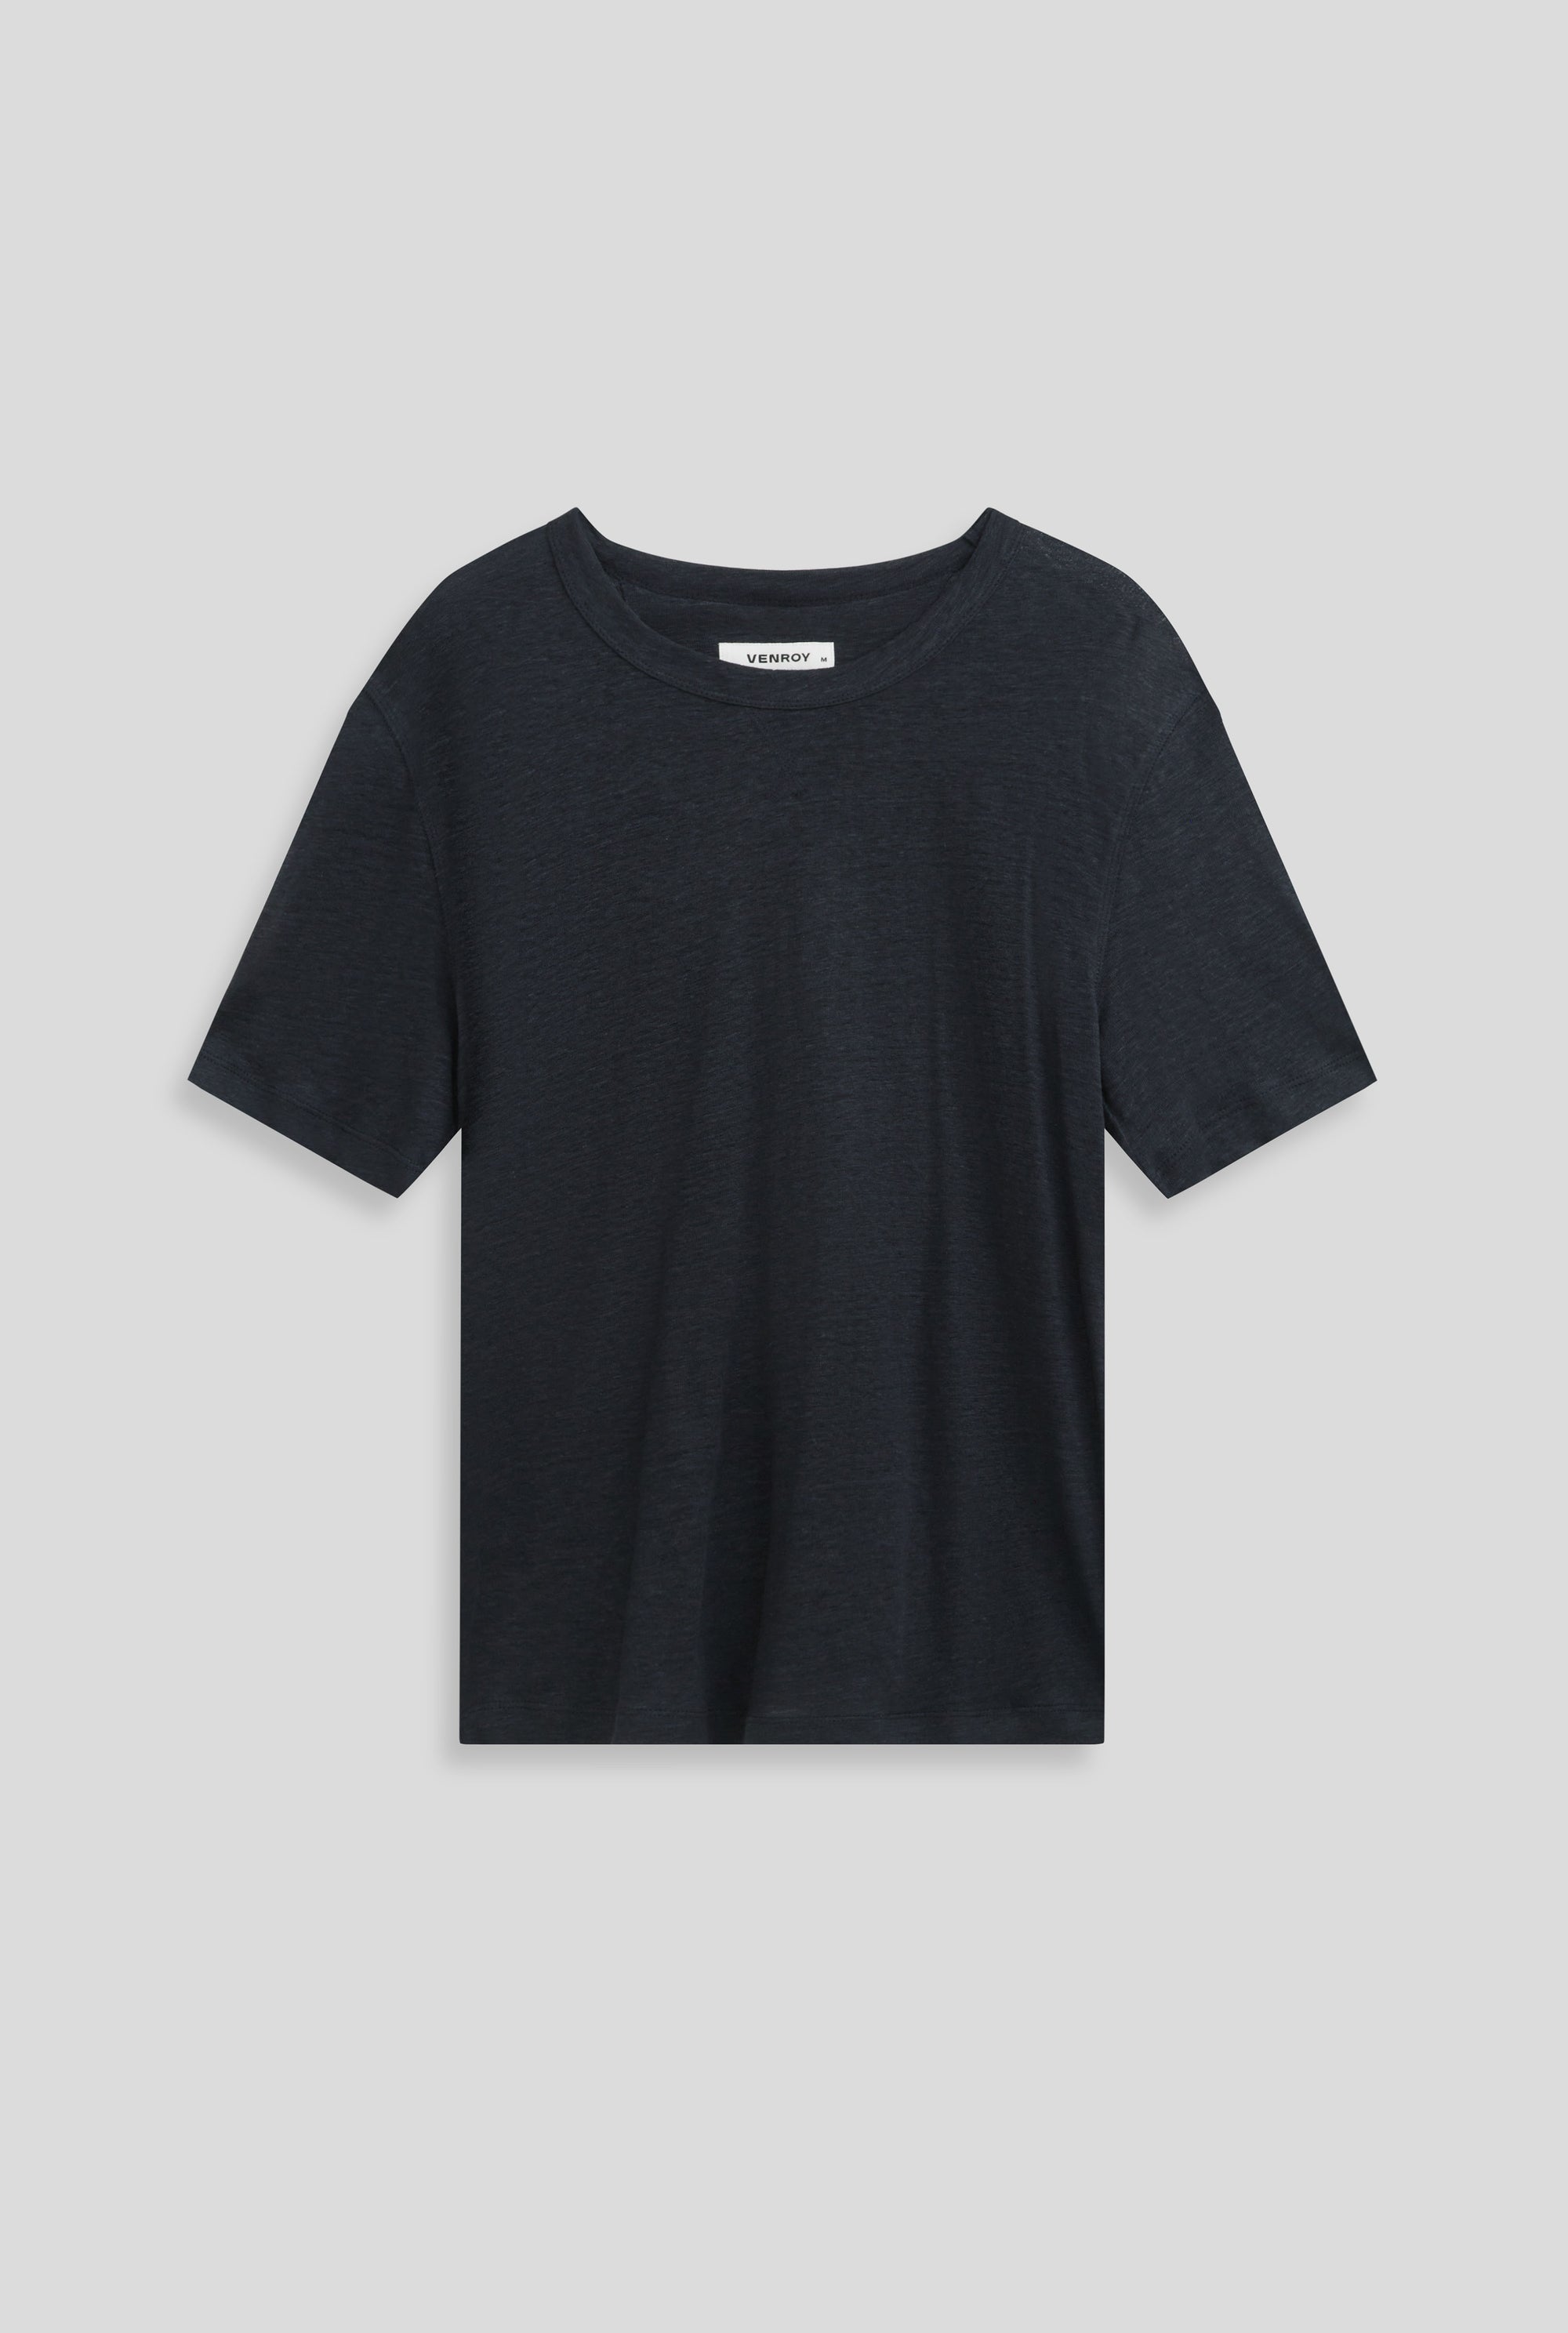 Coverstitch Linen T-Shirt - Navy